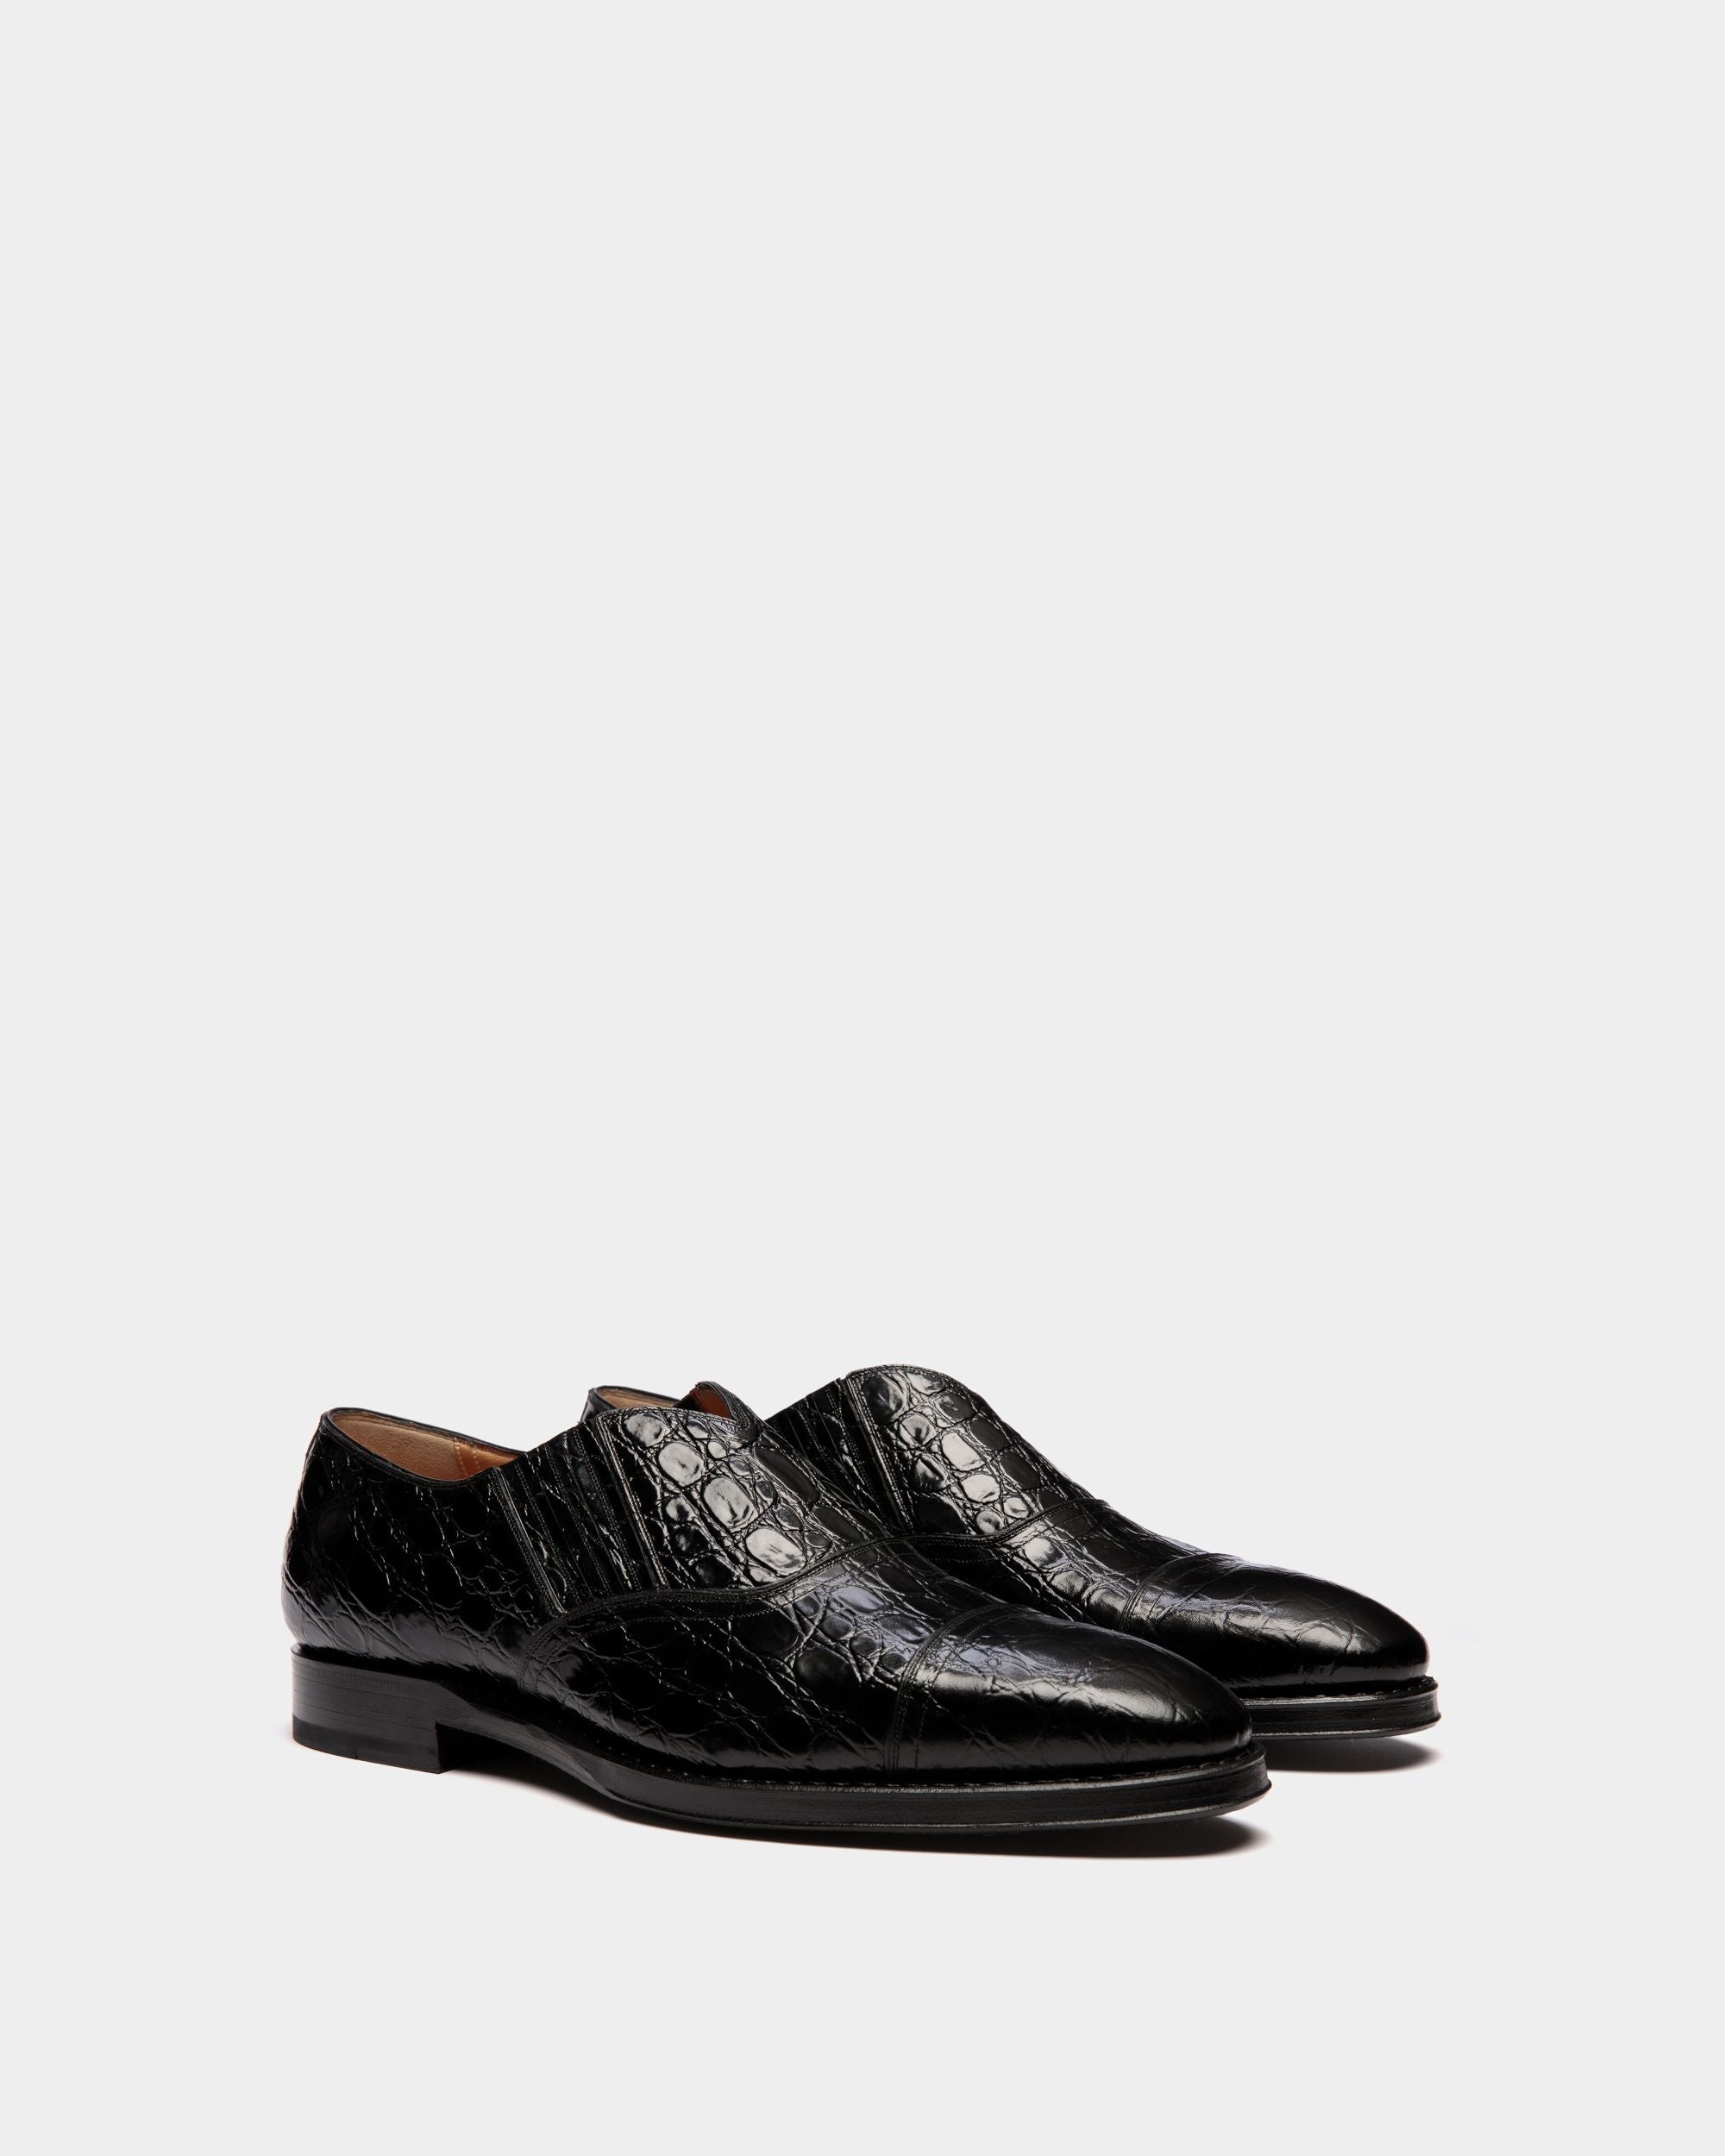 Scribe | Loafers für Herren aus bedrucktem Leder in Schwarz | Bally | Still Life 3/4 Vorderseite